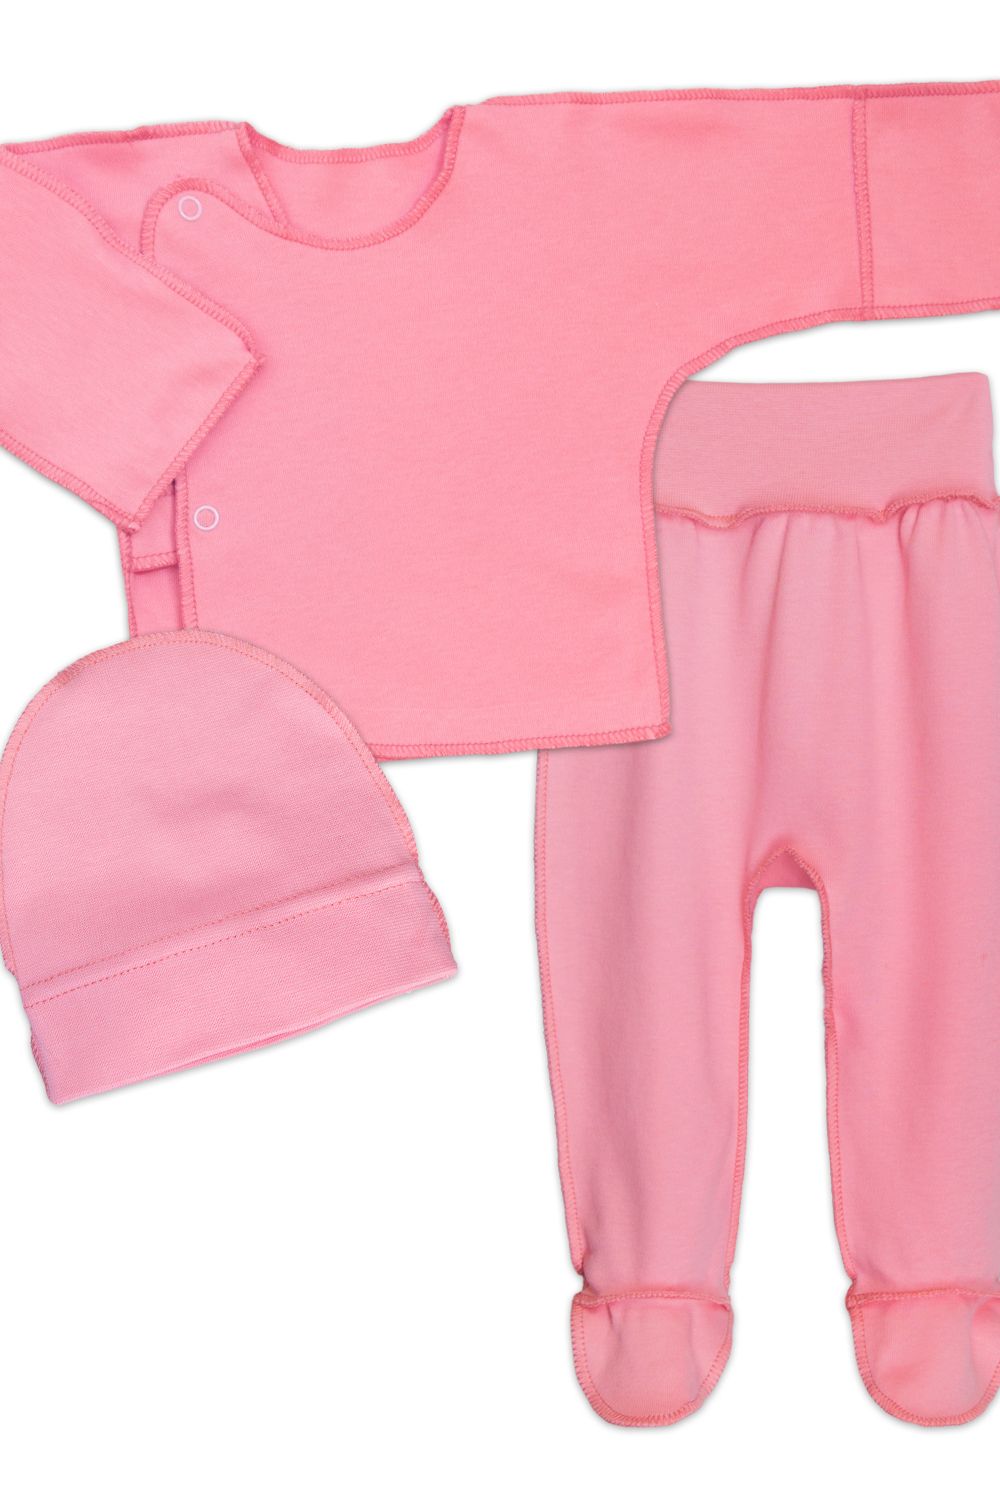 Комплект для новорожденных (распашонка, шапочка, ползунки) 4299 - розовый